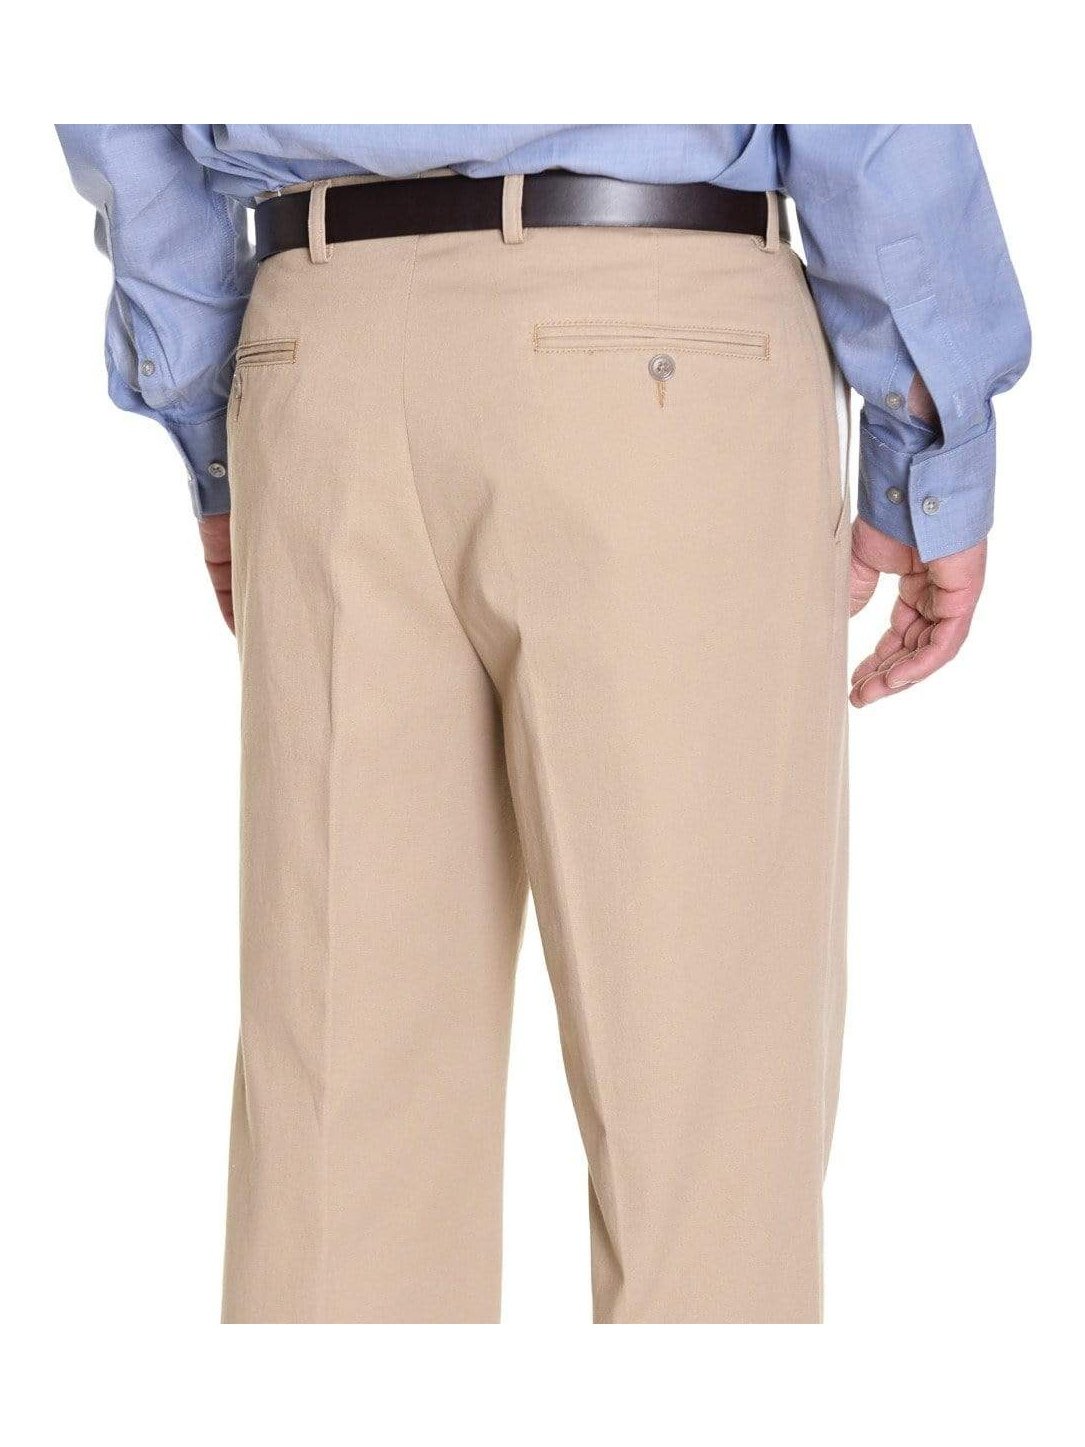 Service Pants - Giza Cotton Twill Khaki | HAVEN